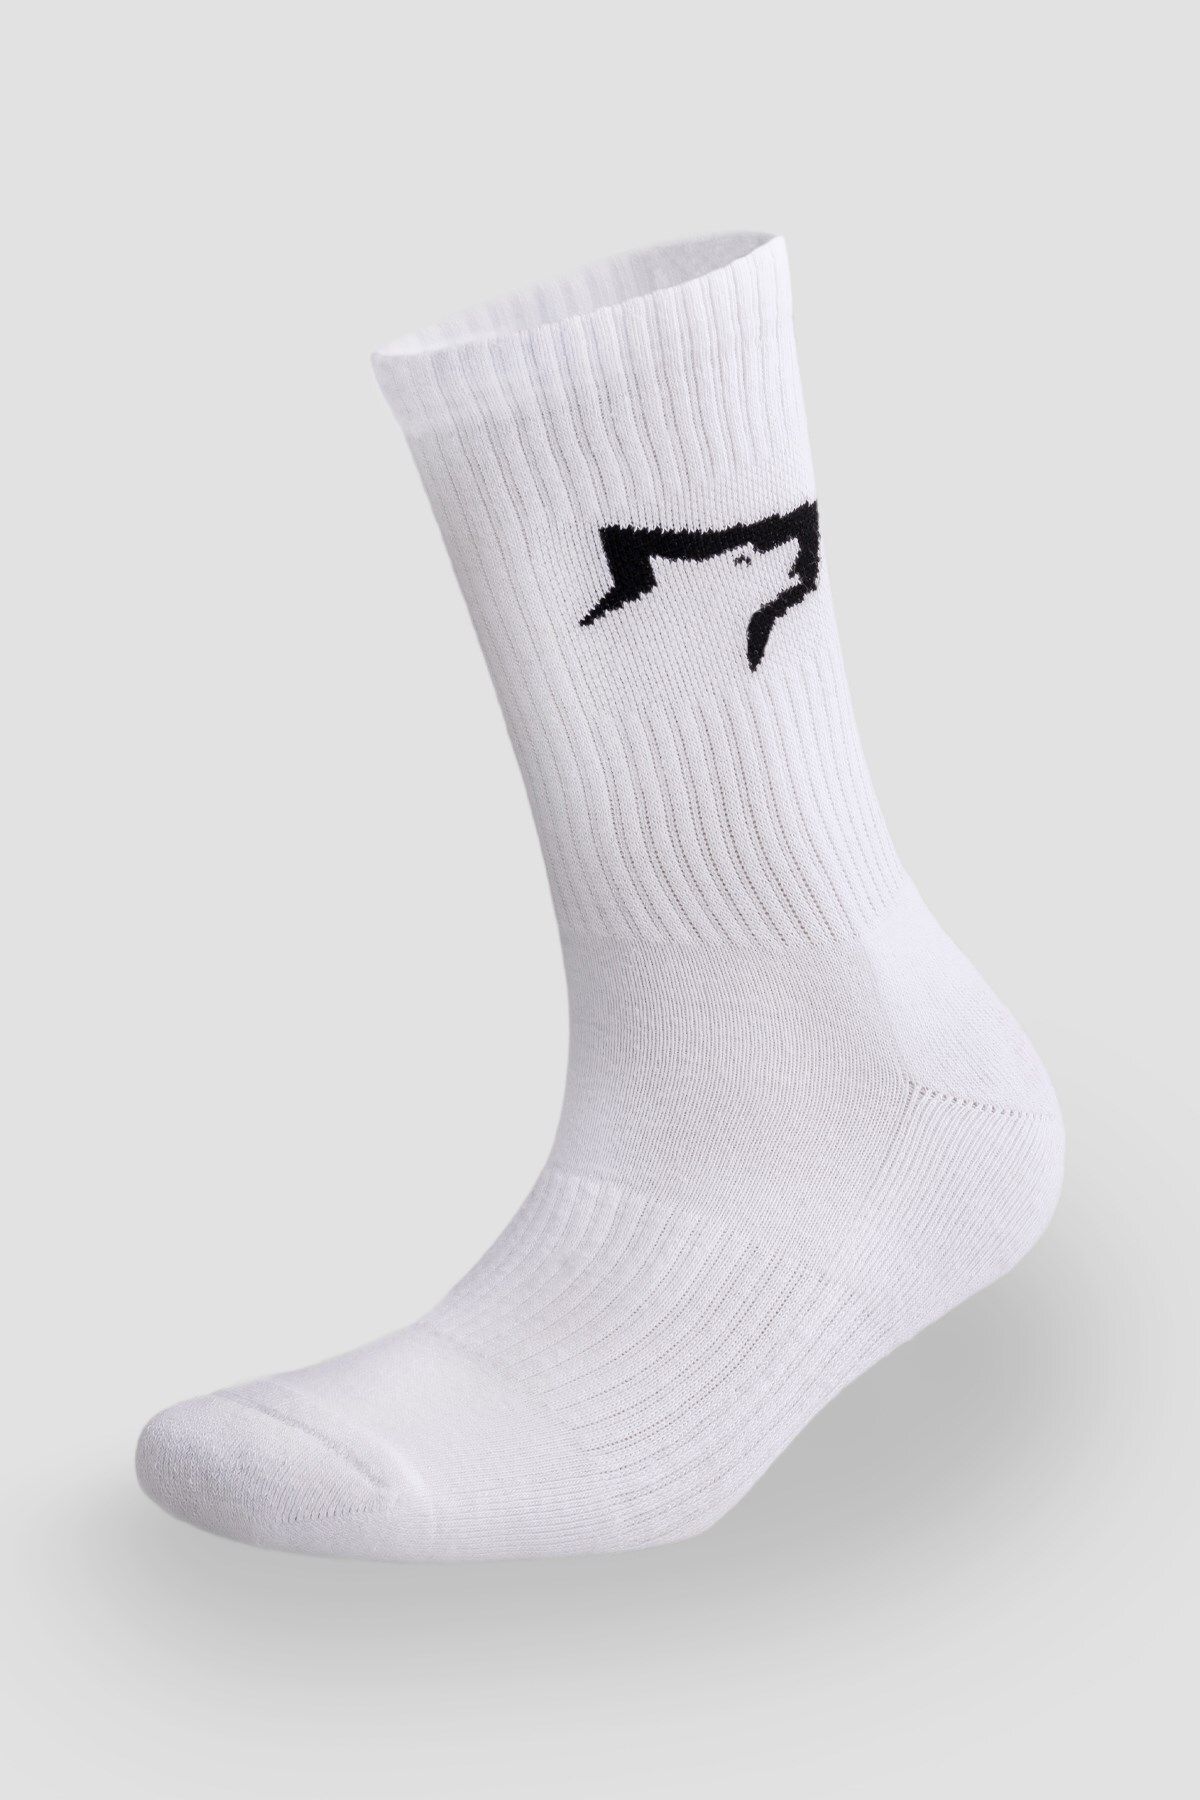 Gymwolves Atlatik Spor Çorap | 3 Lü Paket | Beyaz | Unisex Çorap | Sock |